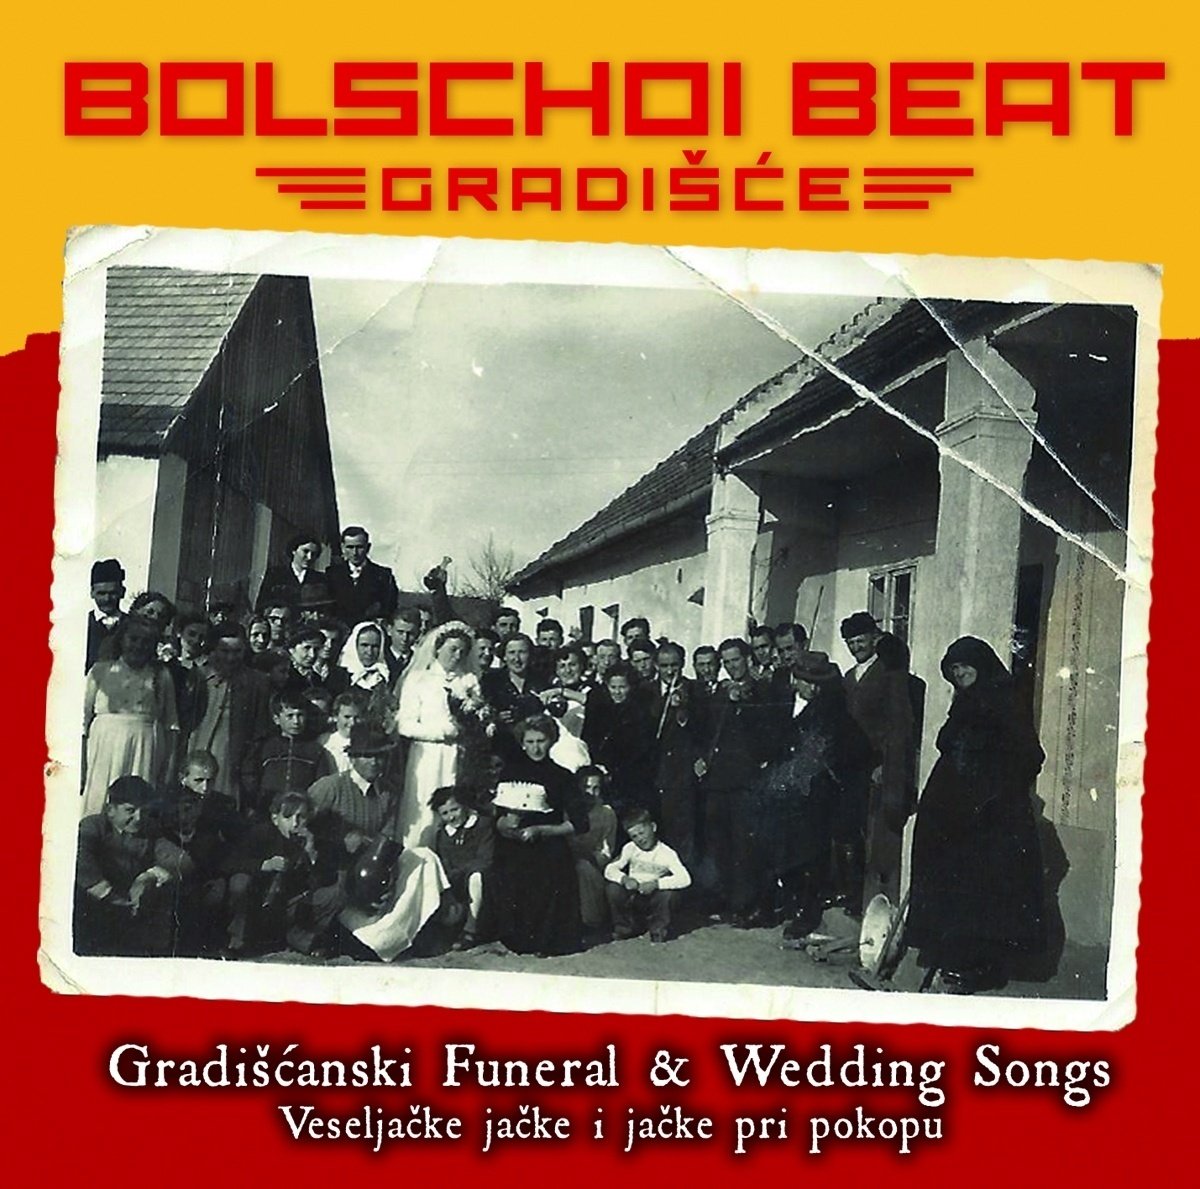 Gradiscanski Funeral-& Weddin - Bolschoi Beat Gradisce. (CD)